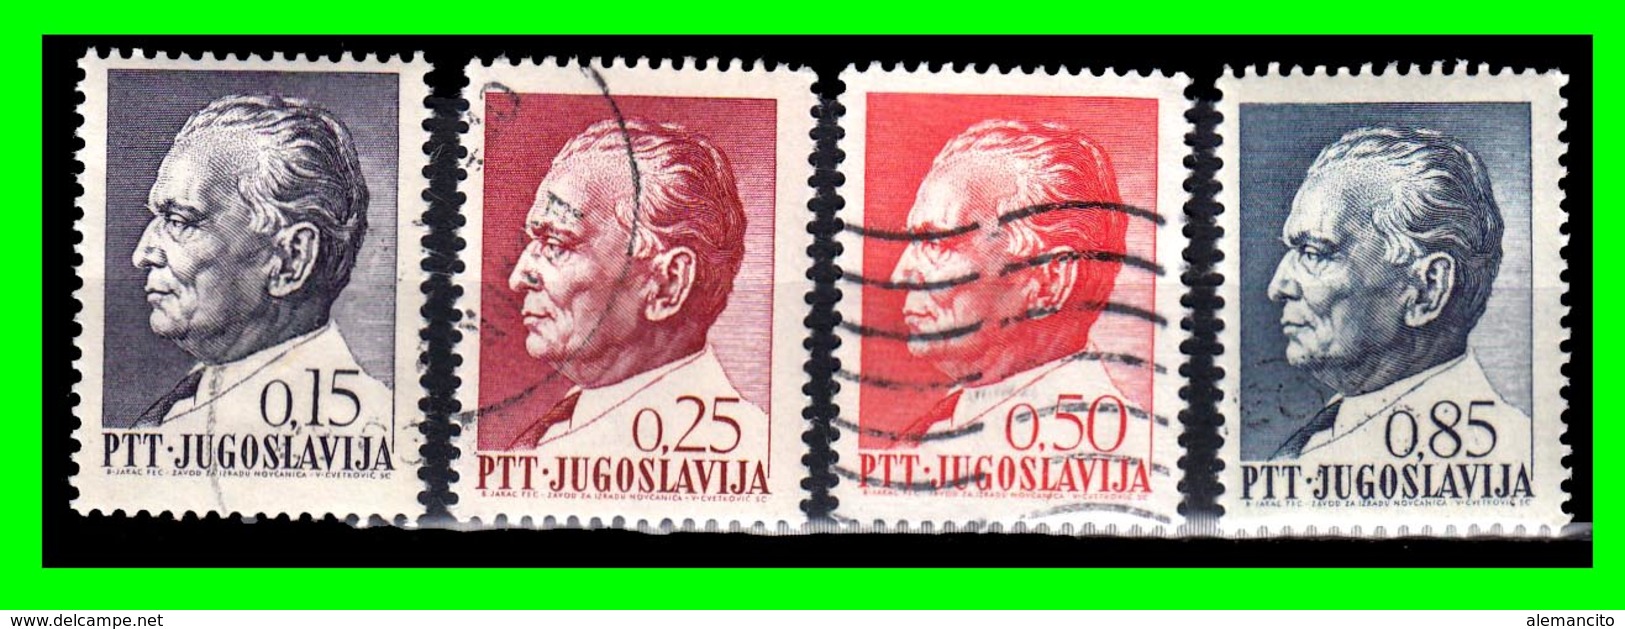 YUGOSLAVIA SELLOS AÑO 1967 LXXV ANIVERSARIO DEL PRESIDENTE JOSIP BROZ TITO  1892-1980 - Usados